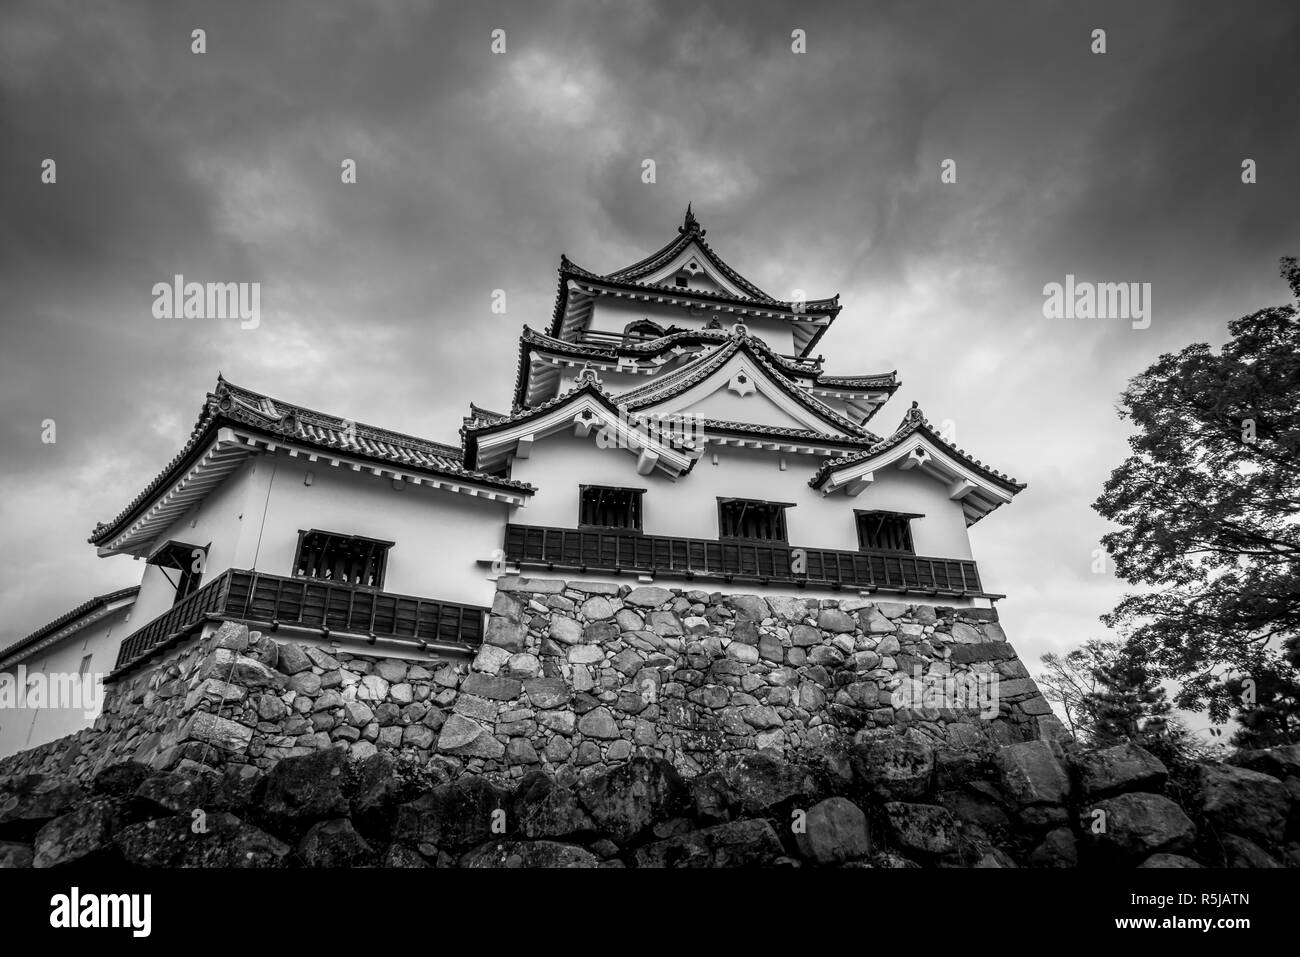 Gasthof Schloss ist 1 von 12 original Burgen in Japan - Präfektur Shiga. Stockfoto